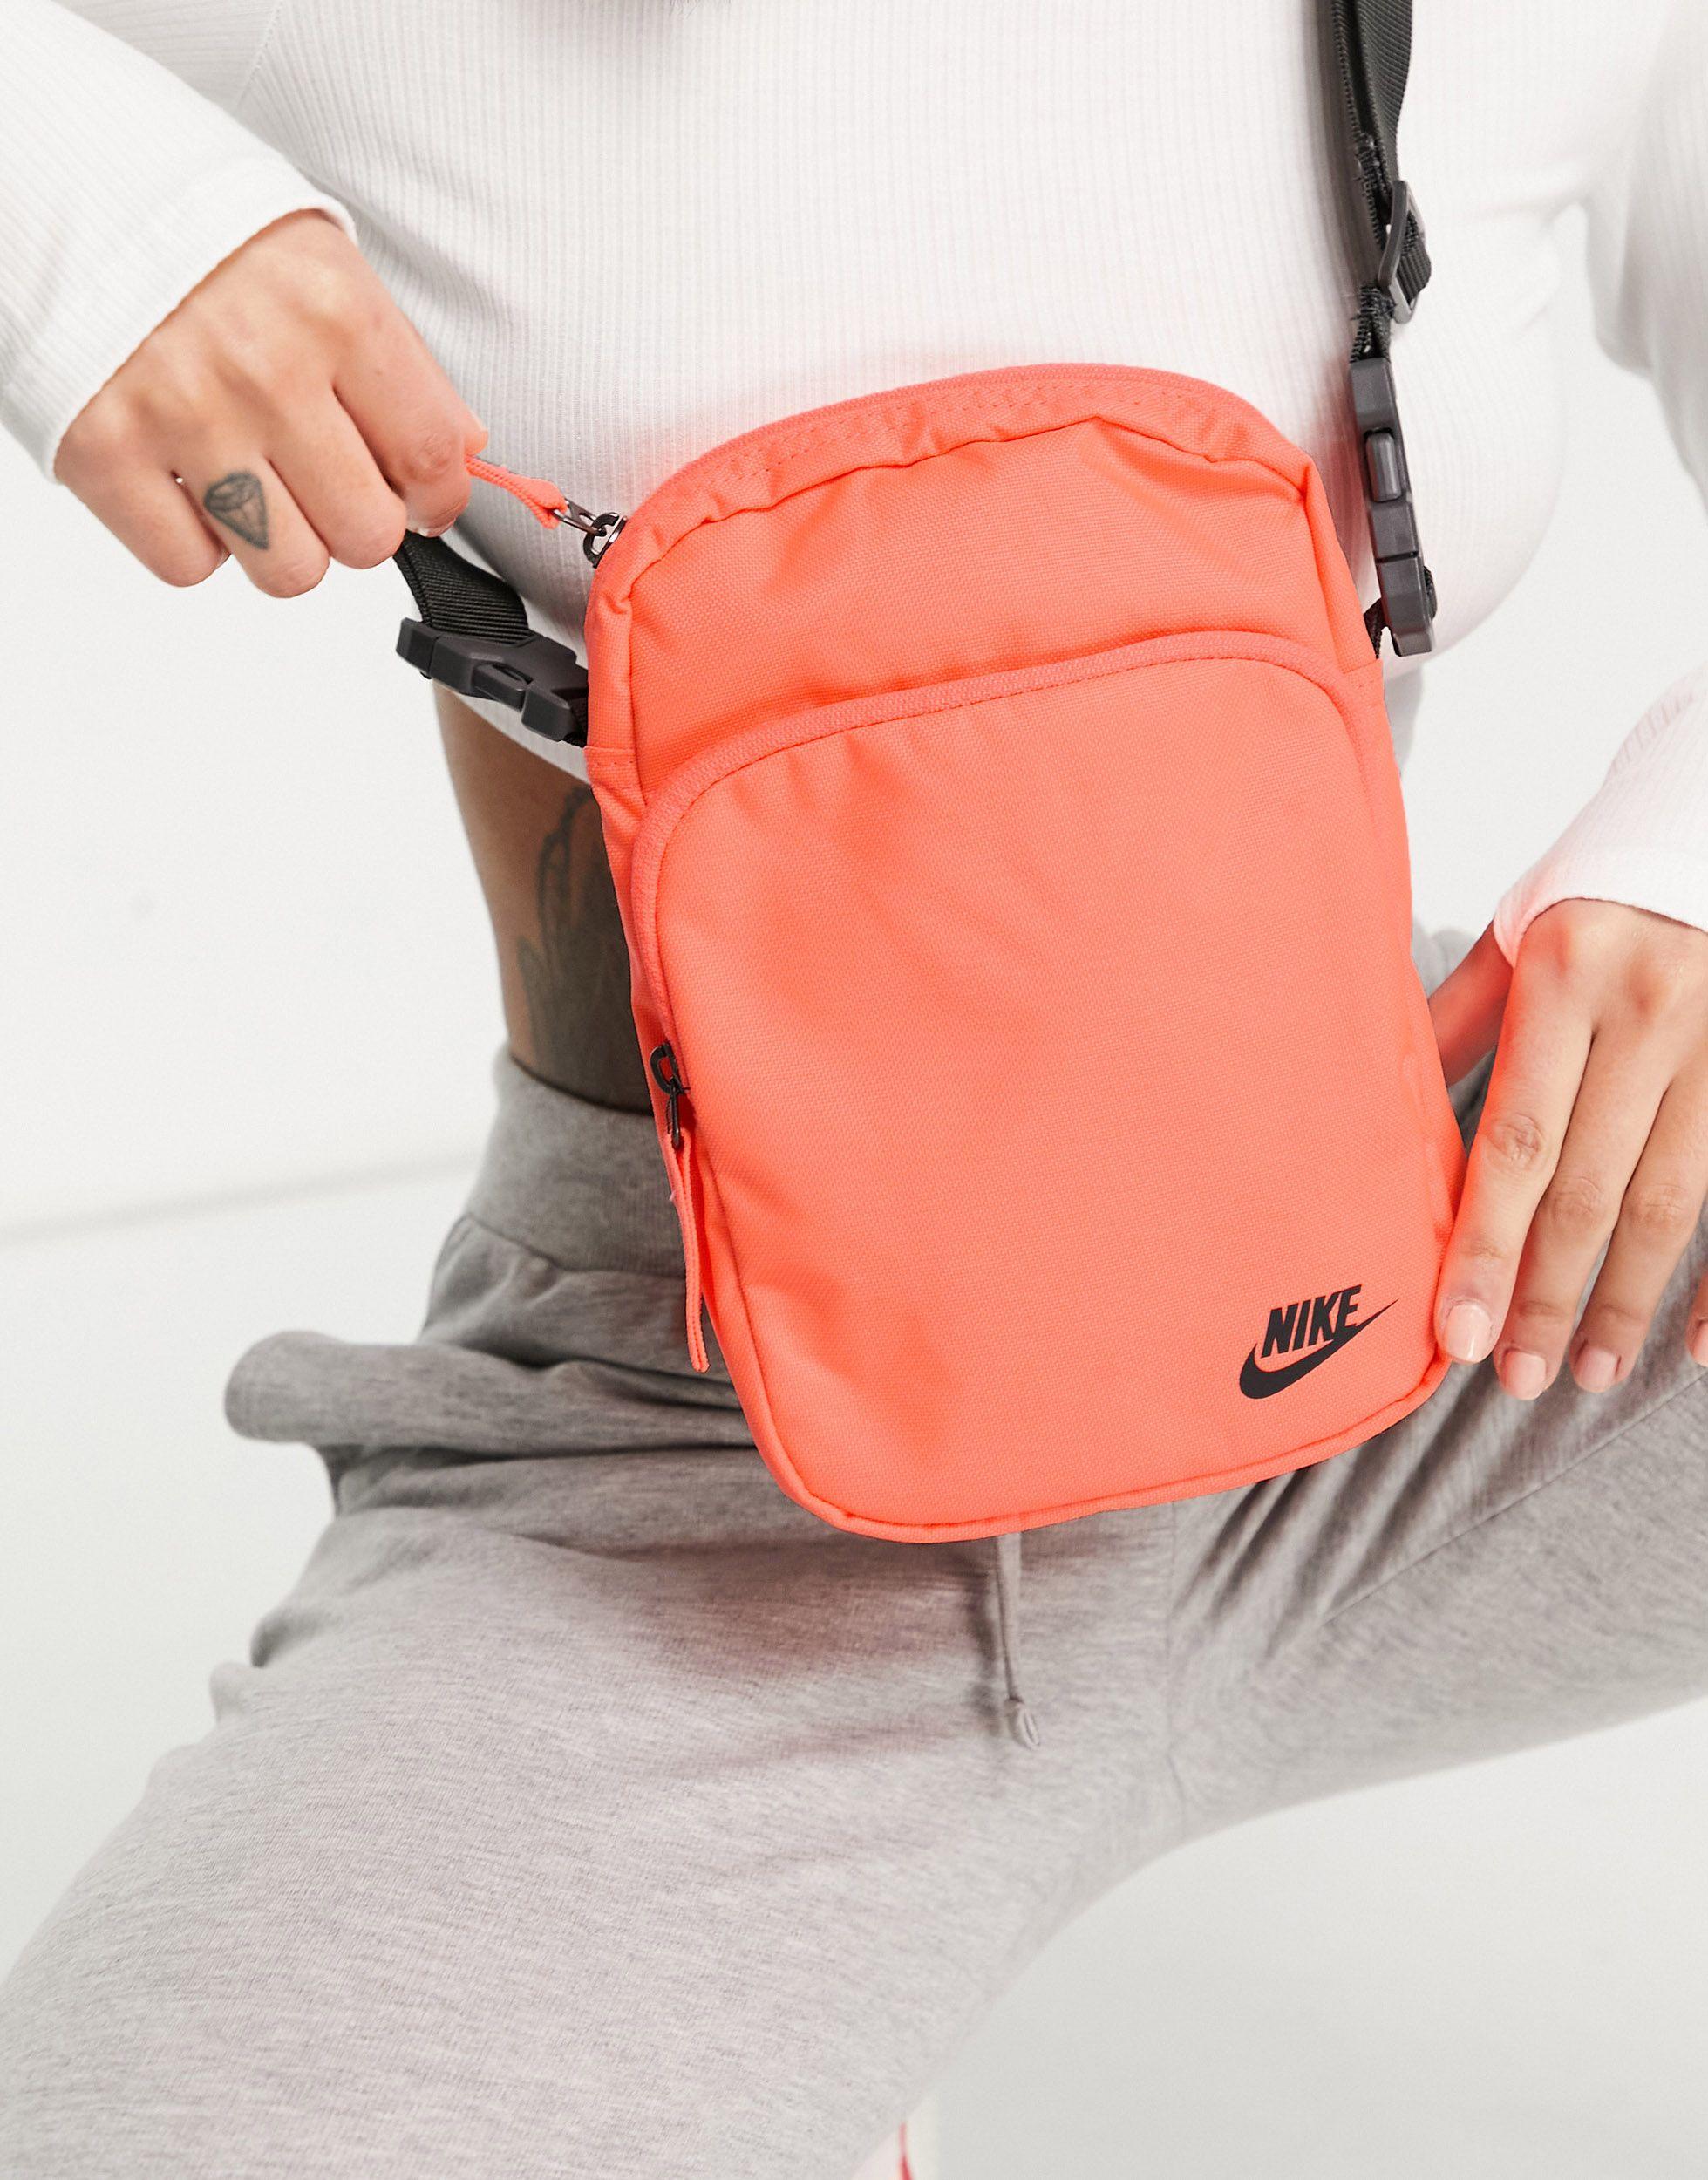 Nike Heritage Flight Bag in Orange - Lyst